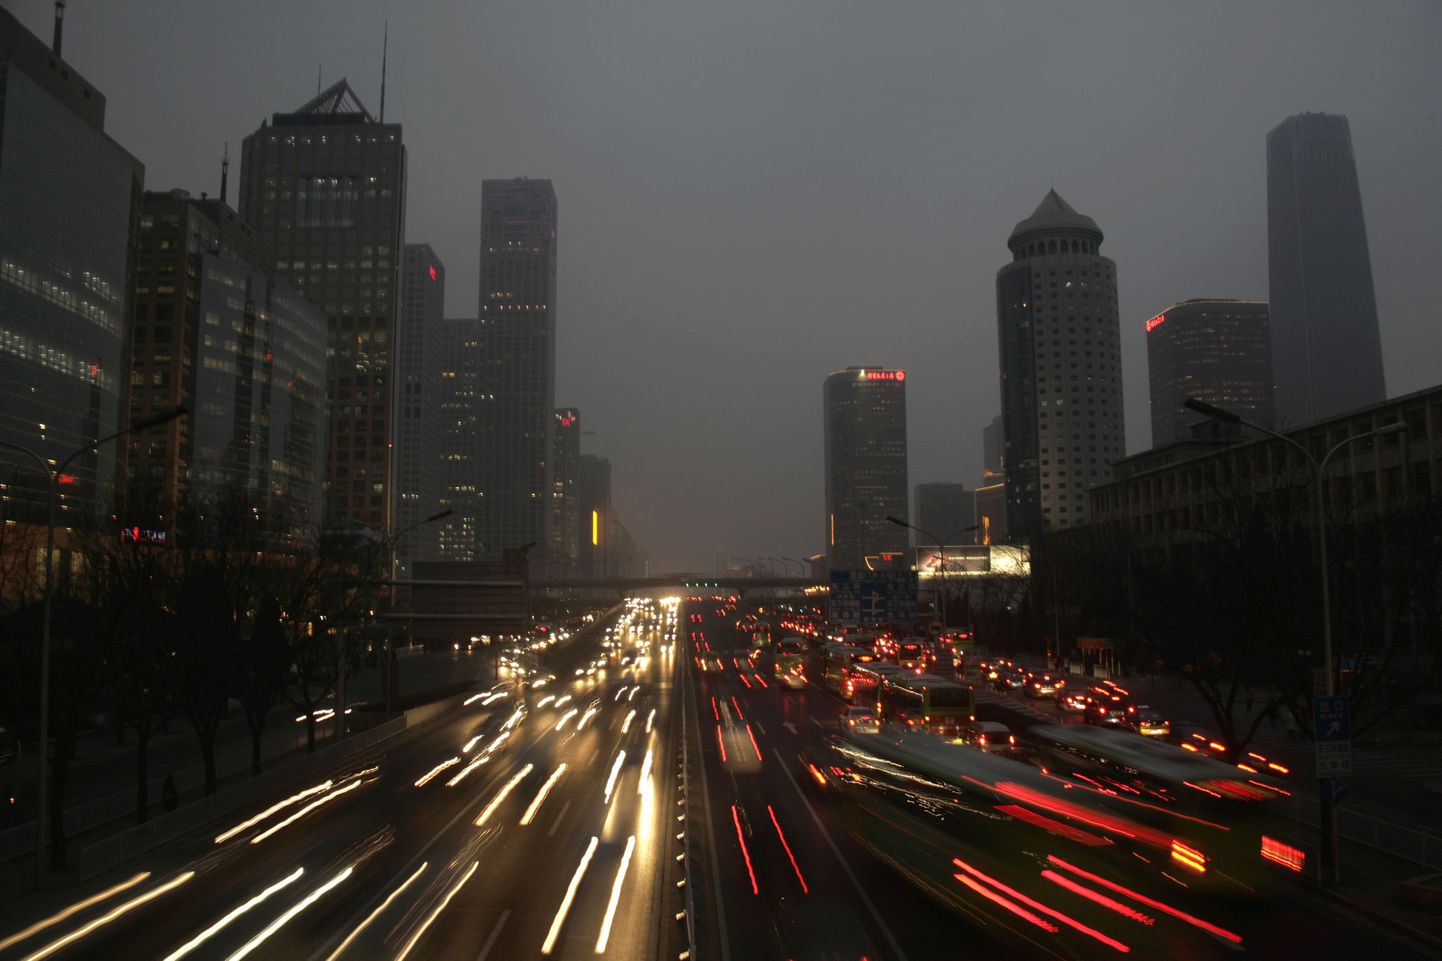 Pilt öisest Pekingist on tehtud Jianguo tänavalt täna.